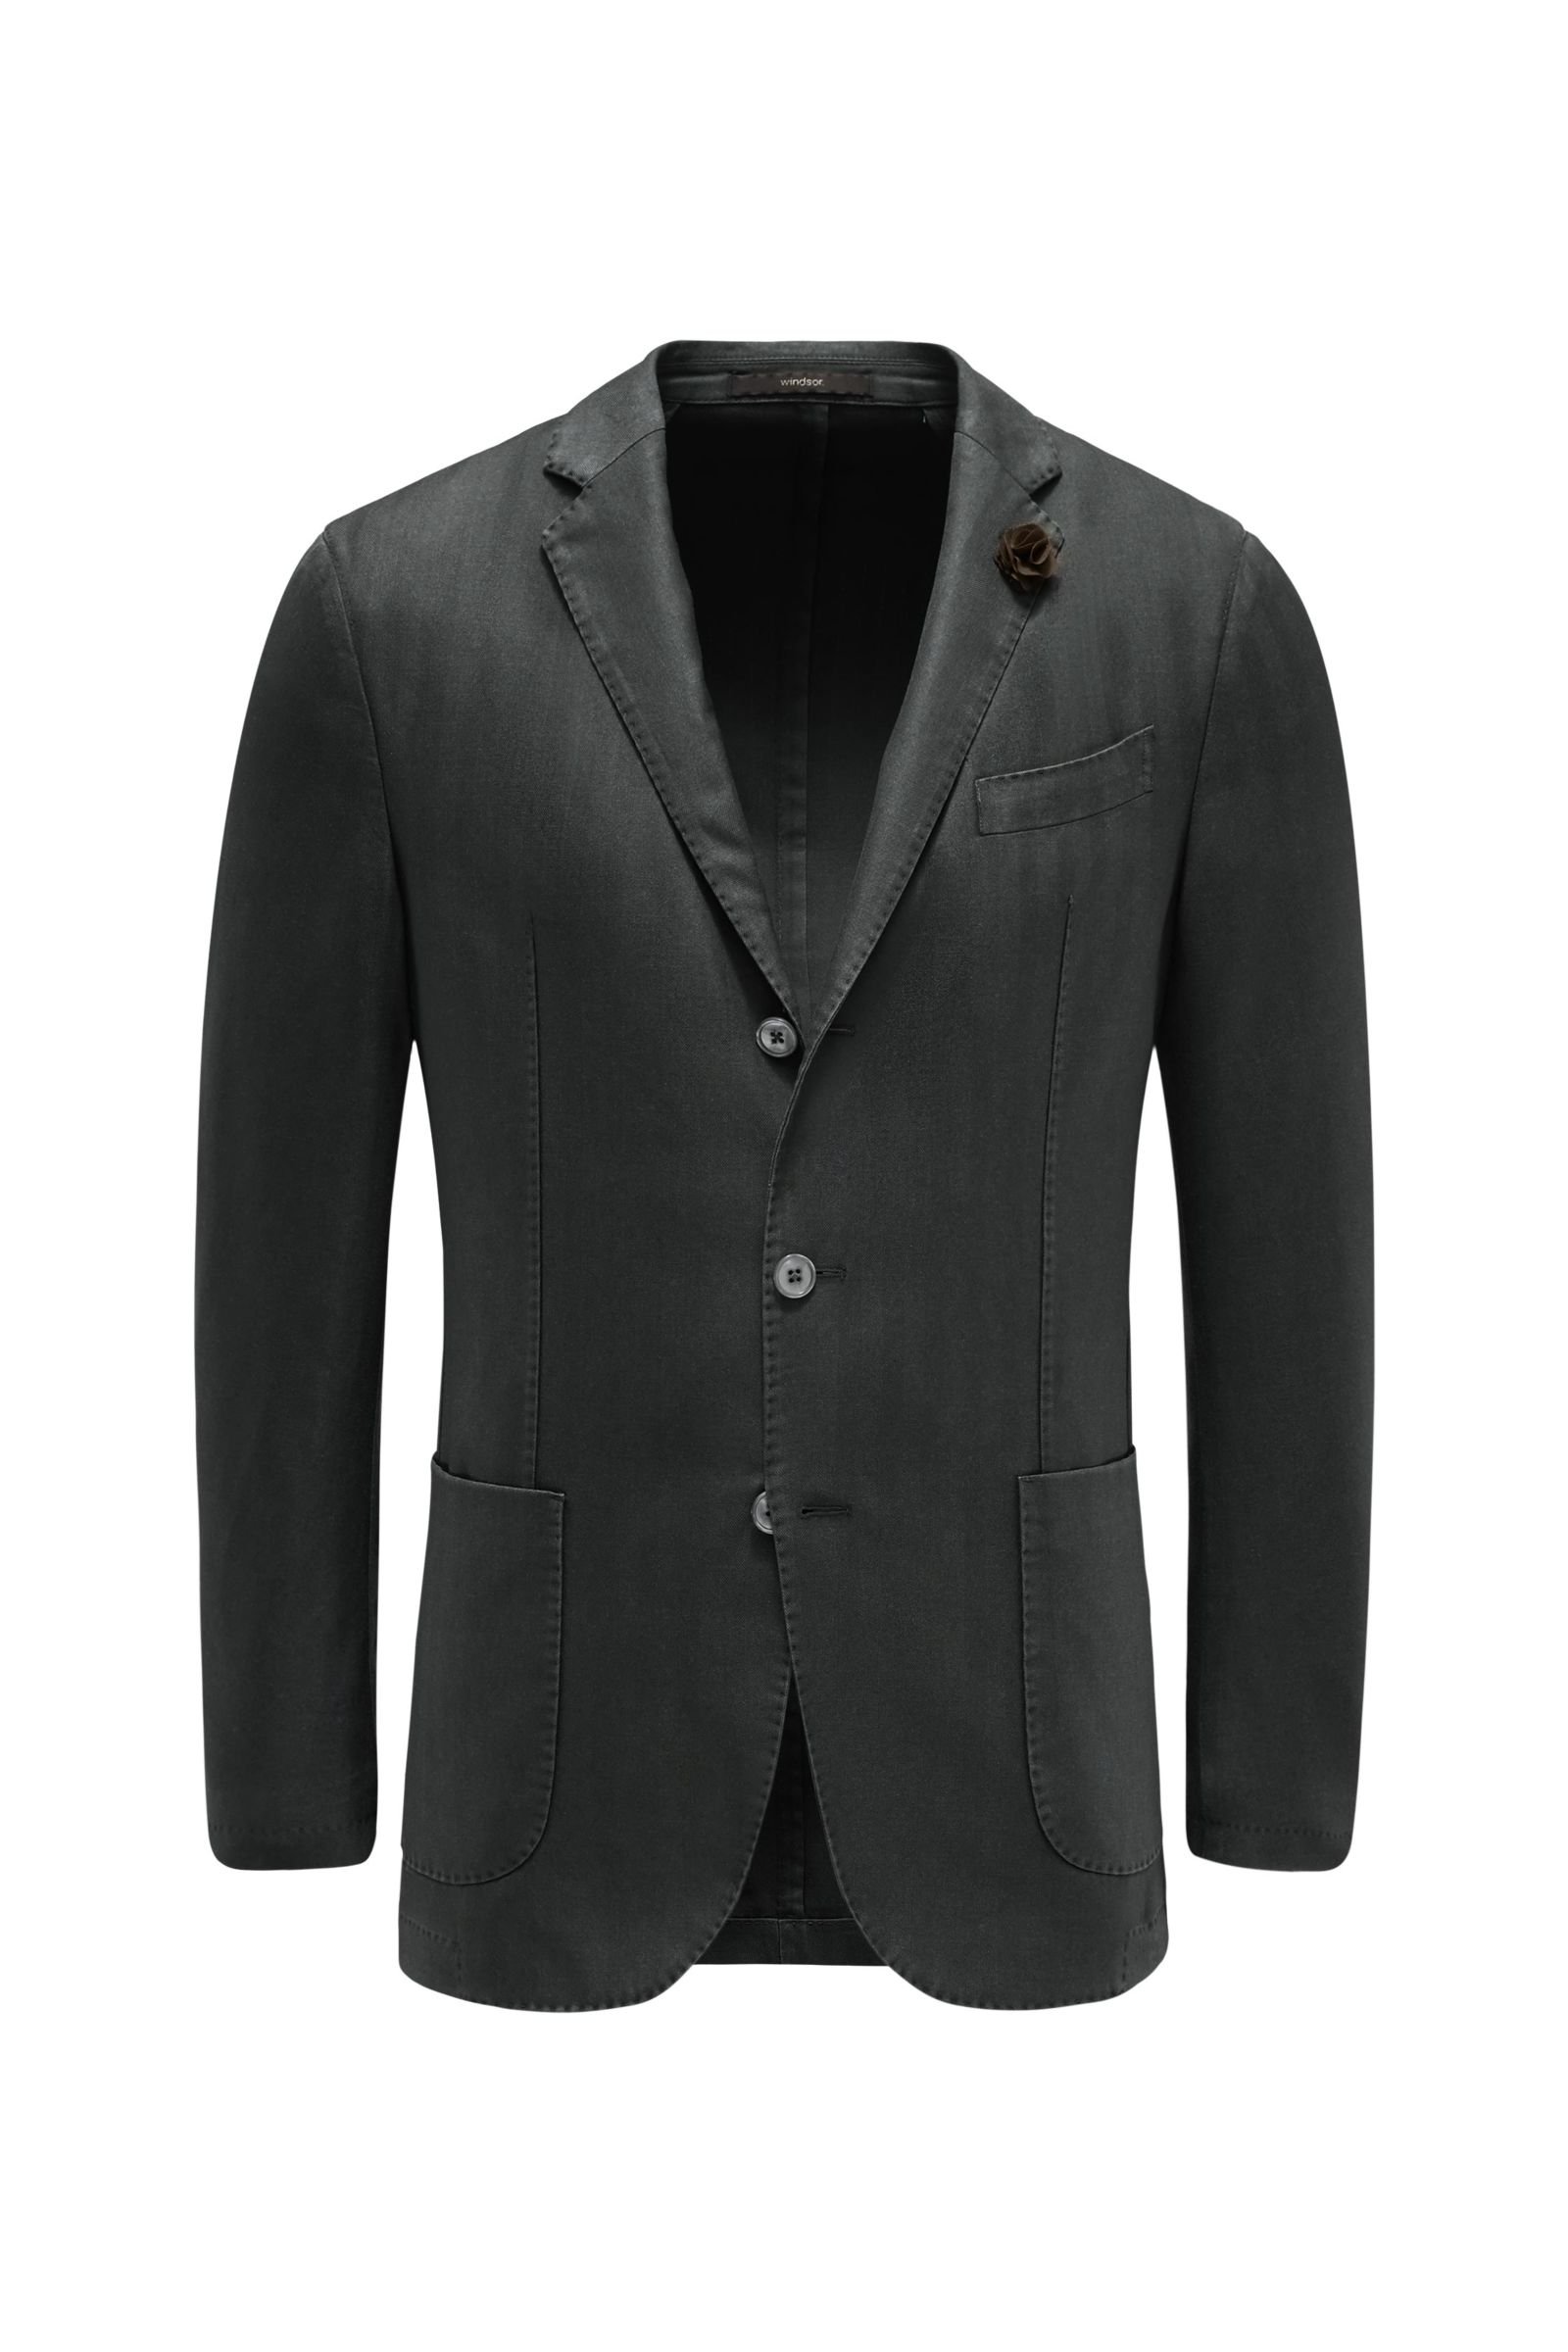 Smart-casual jacket 'Camicia' dark grey